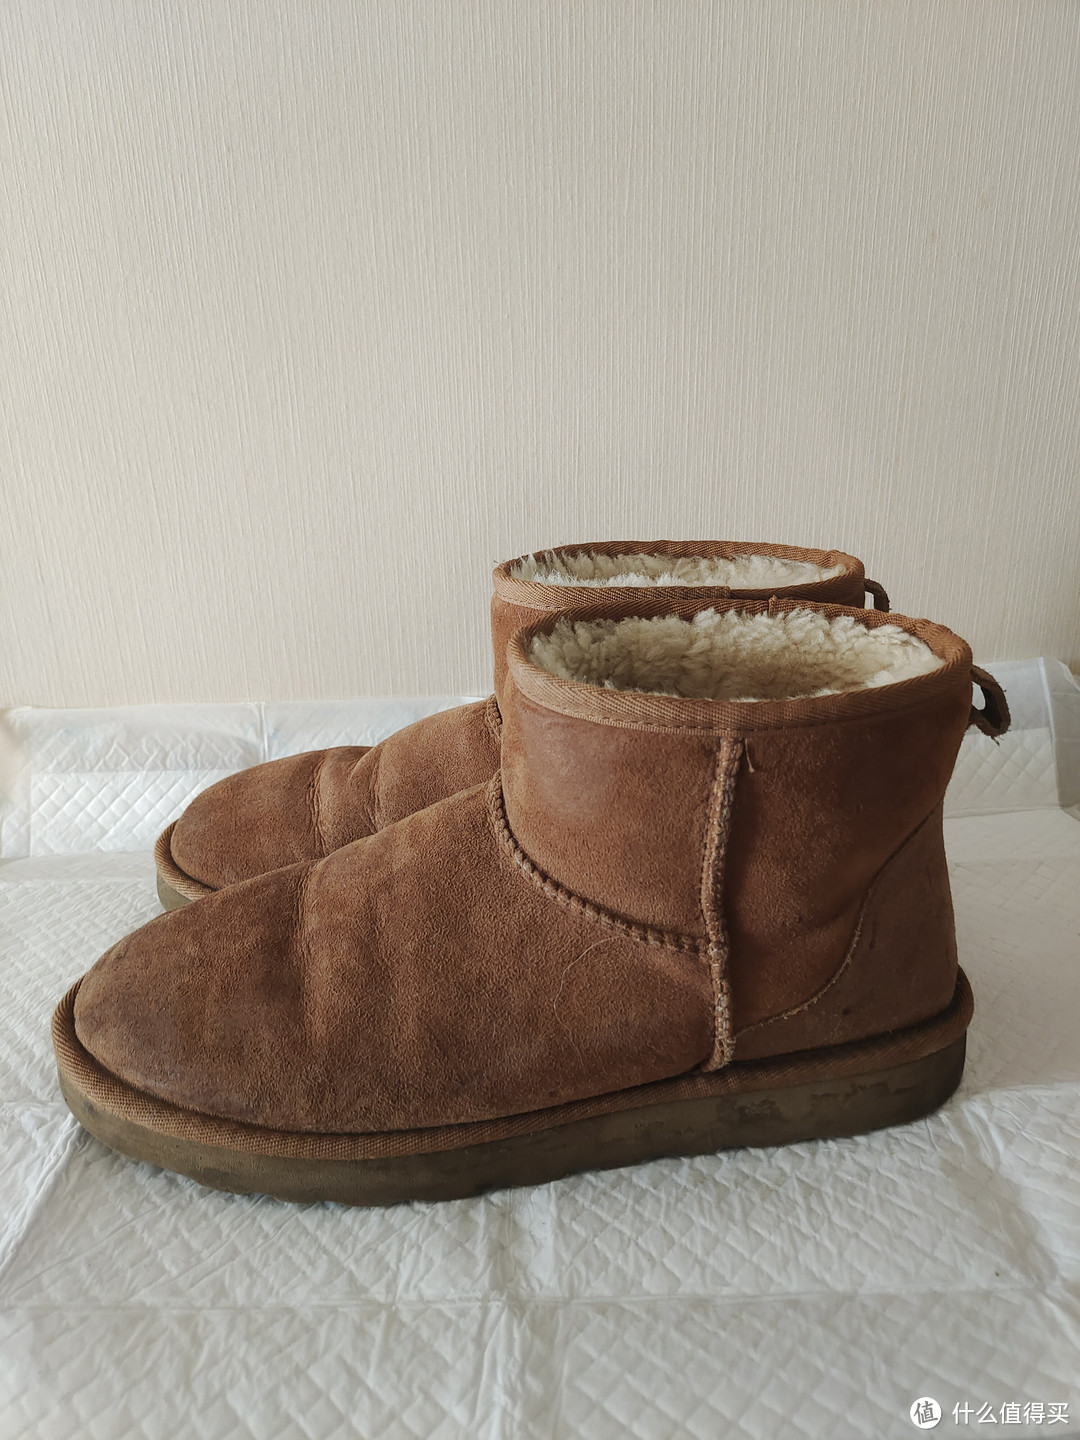 冬季必备的保暖雪地靴推荐。